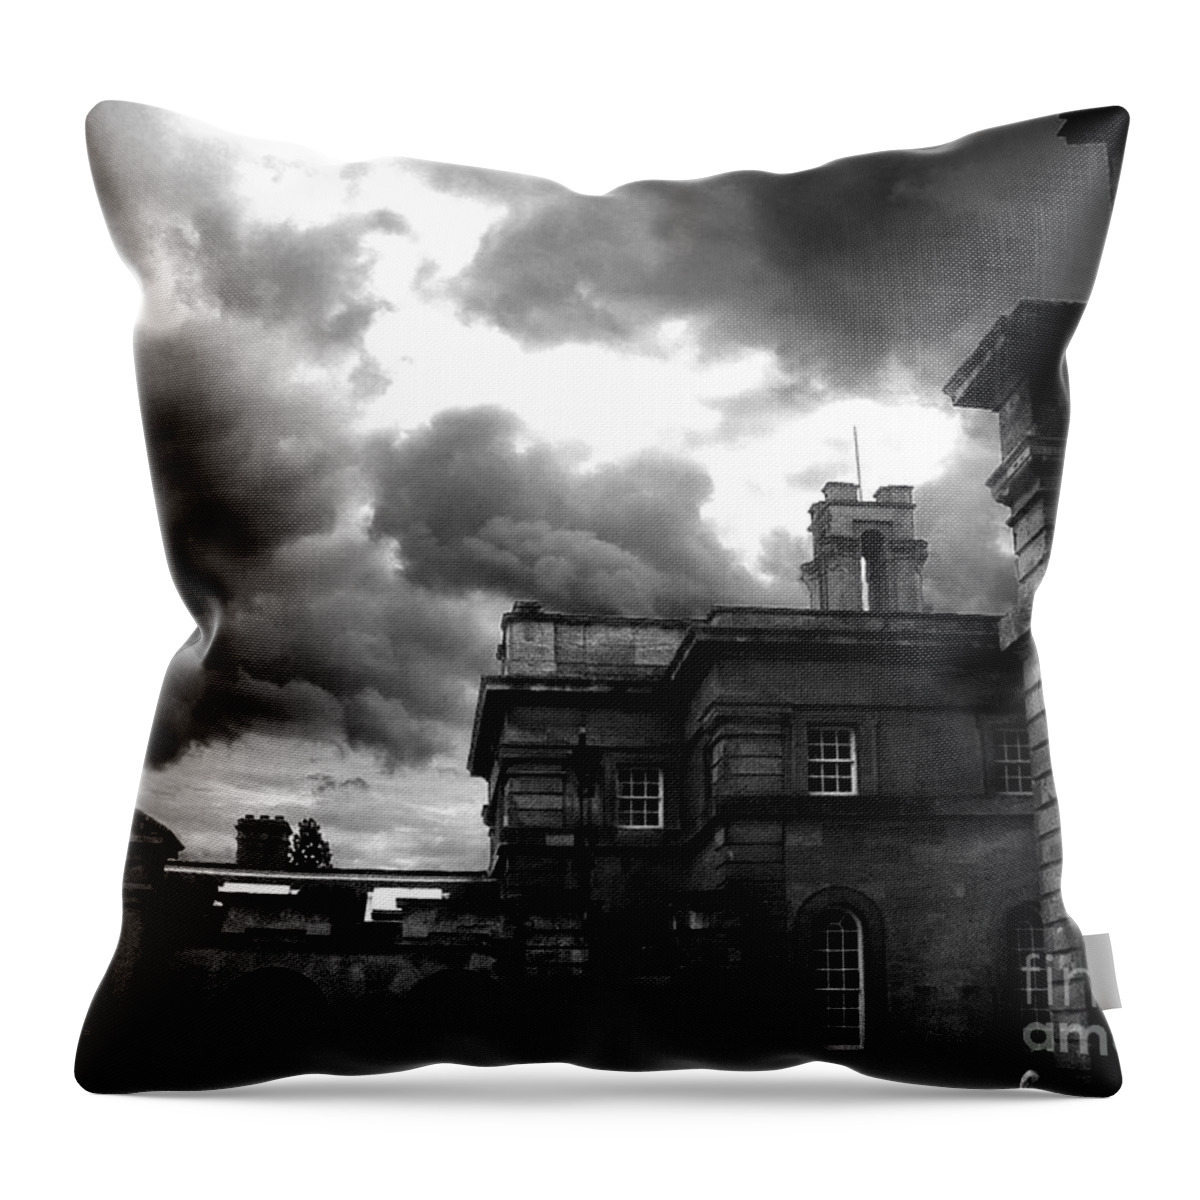 Blenheim Castle Throw Pillow featuring the photograph Clouds Over Blenheim by Brian Watt